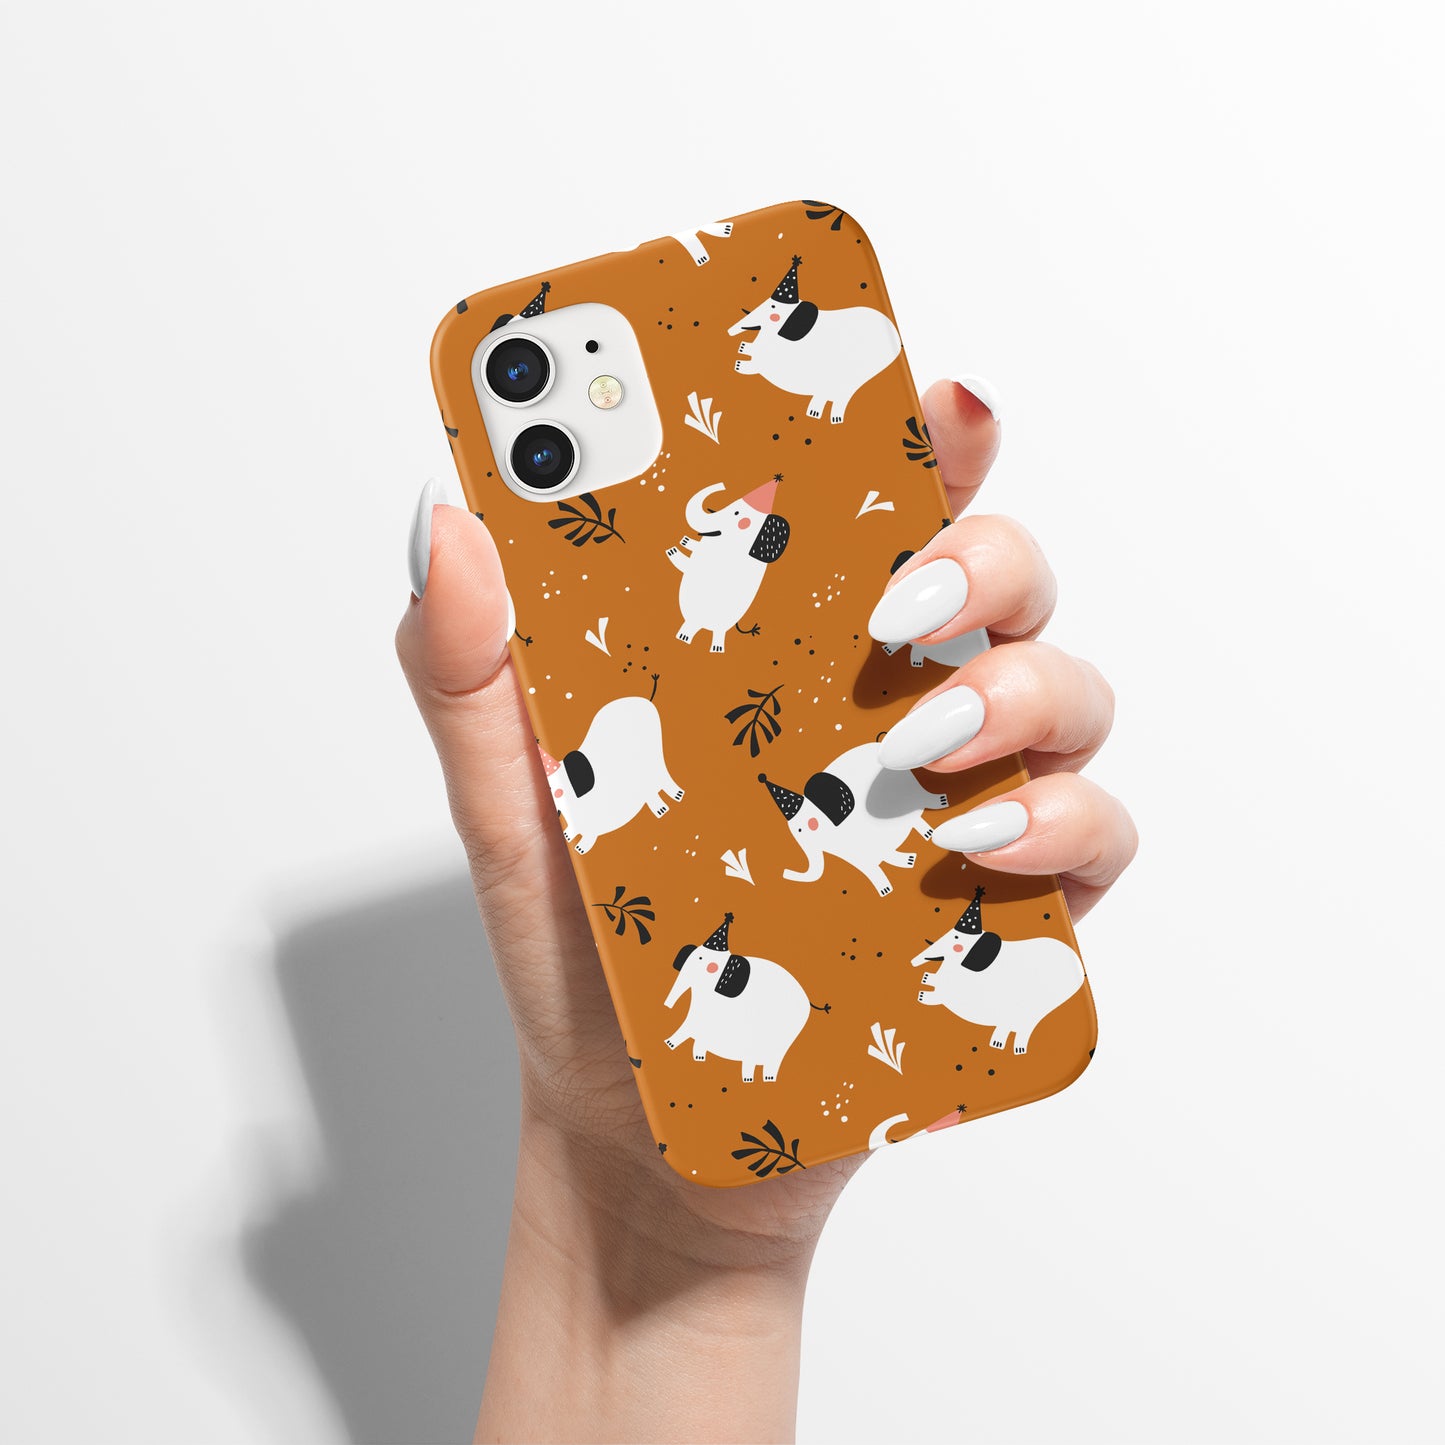 Cute Little Elephants iPhone Case